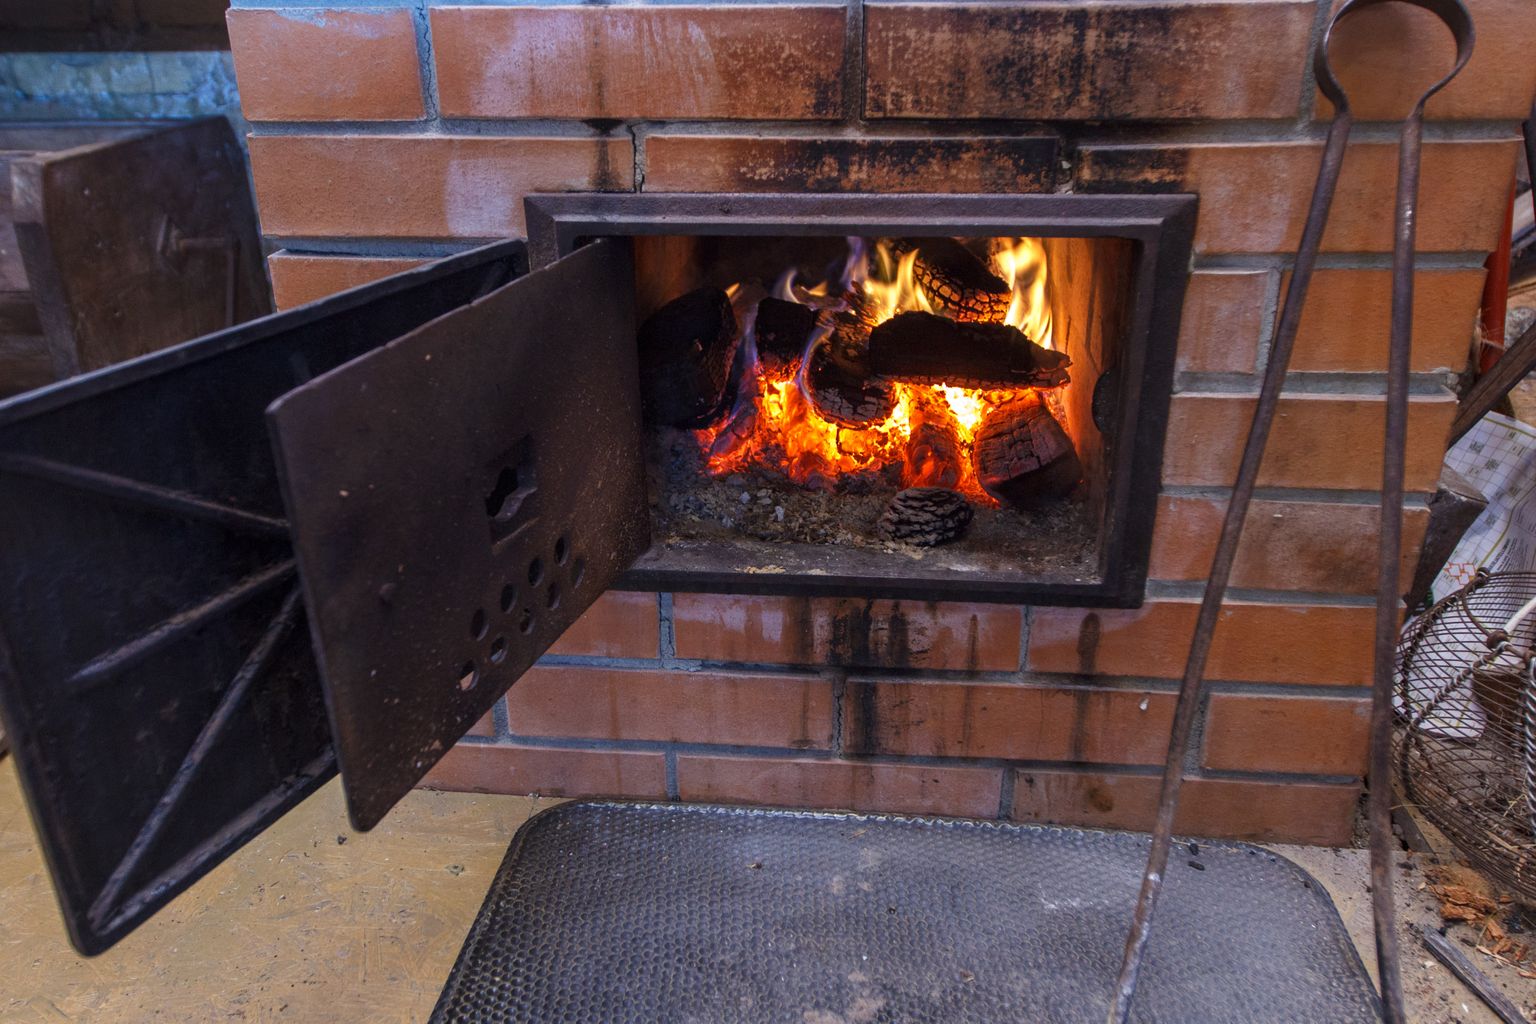 Ahi, kütmine, põlemine, küttepuud, soojus, toasoe, ahju uks, küttekolle

Foto: Arvo Meeks/Valgamaalane